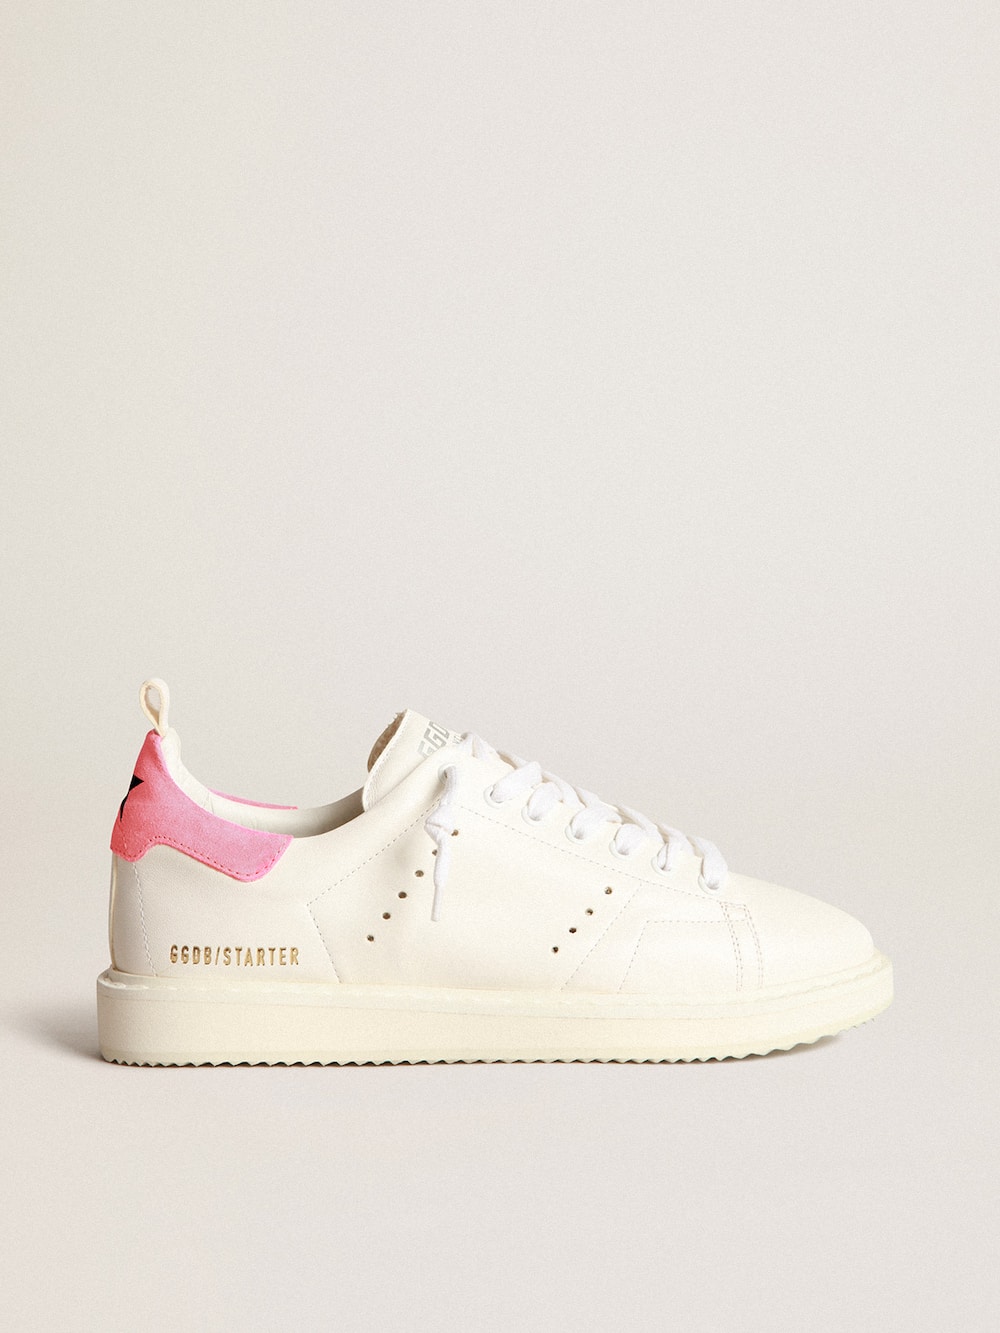 Golden Goose - Sneakers Starter aus weißem Nappaleder mit rosa Rauleder an der Fersenpartie in 